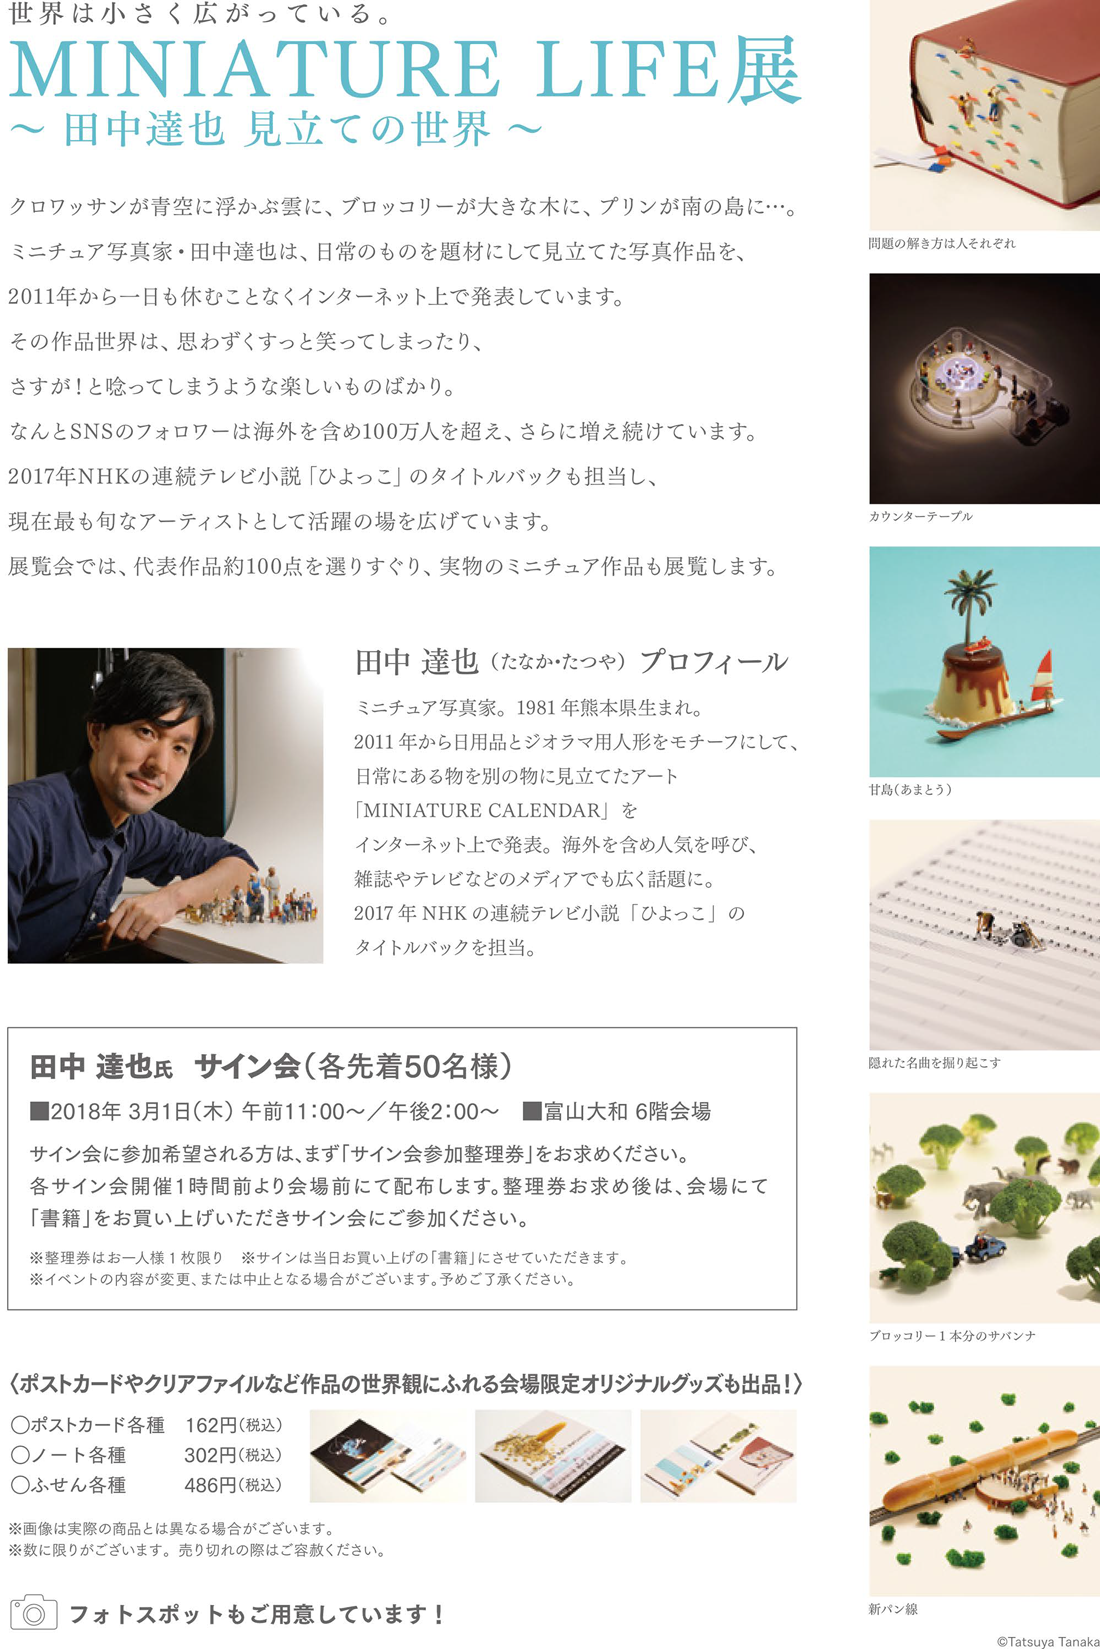 富山大和で開催される田中達也氏のMINIATURE LIFE展の内容